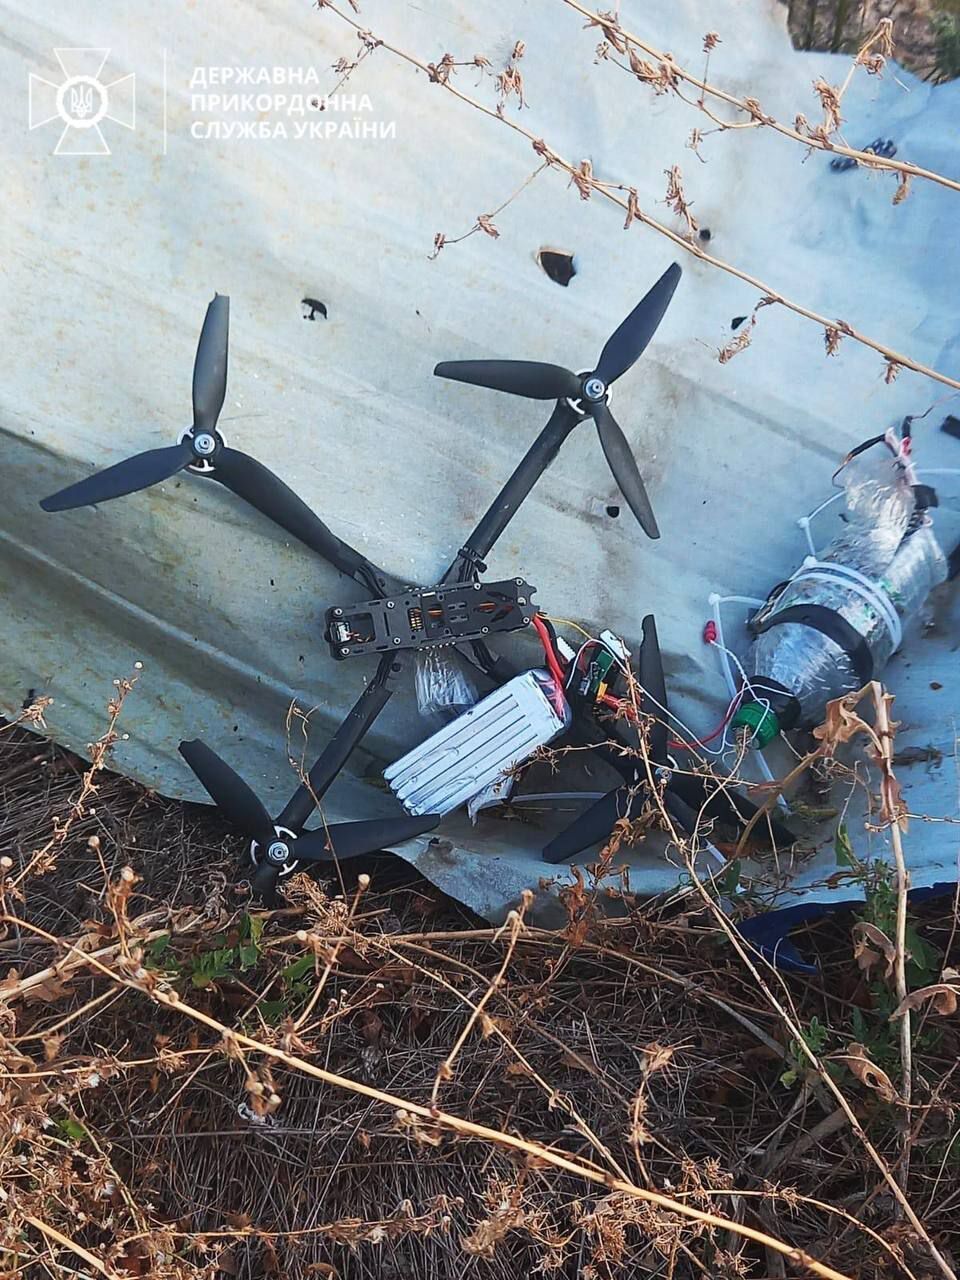 На Запорожье пограничник приземлил вражеский дрон, нашпигованный взрывчаткой: пятый за неделю. Фото